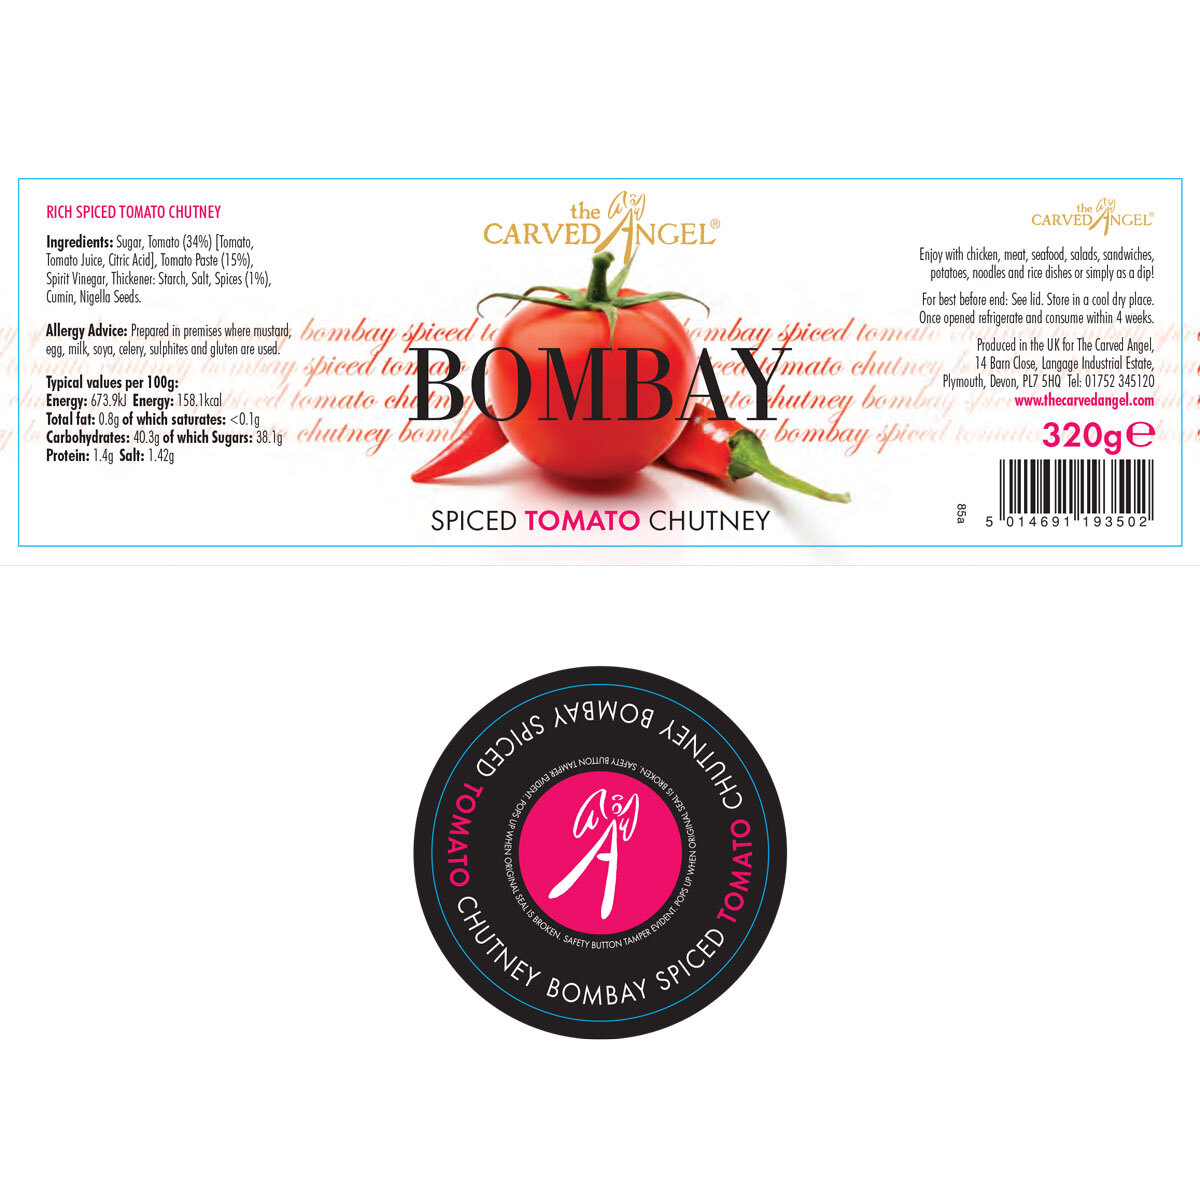 Bombay Tomato Chutney ingredients